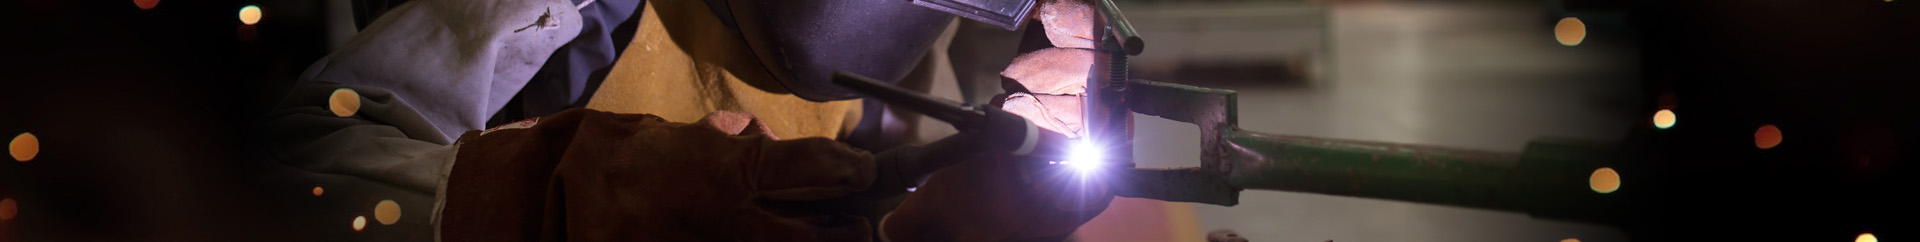 銳耀是專業金屬雷射焊接、焊補、氬焊產品設計及代工